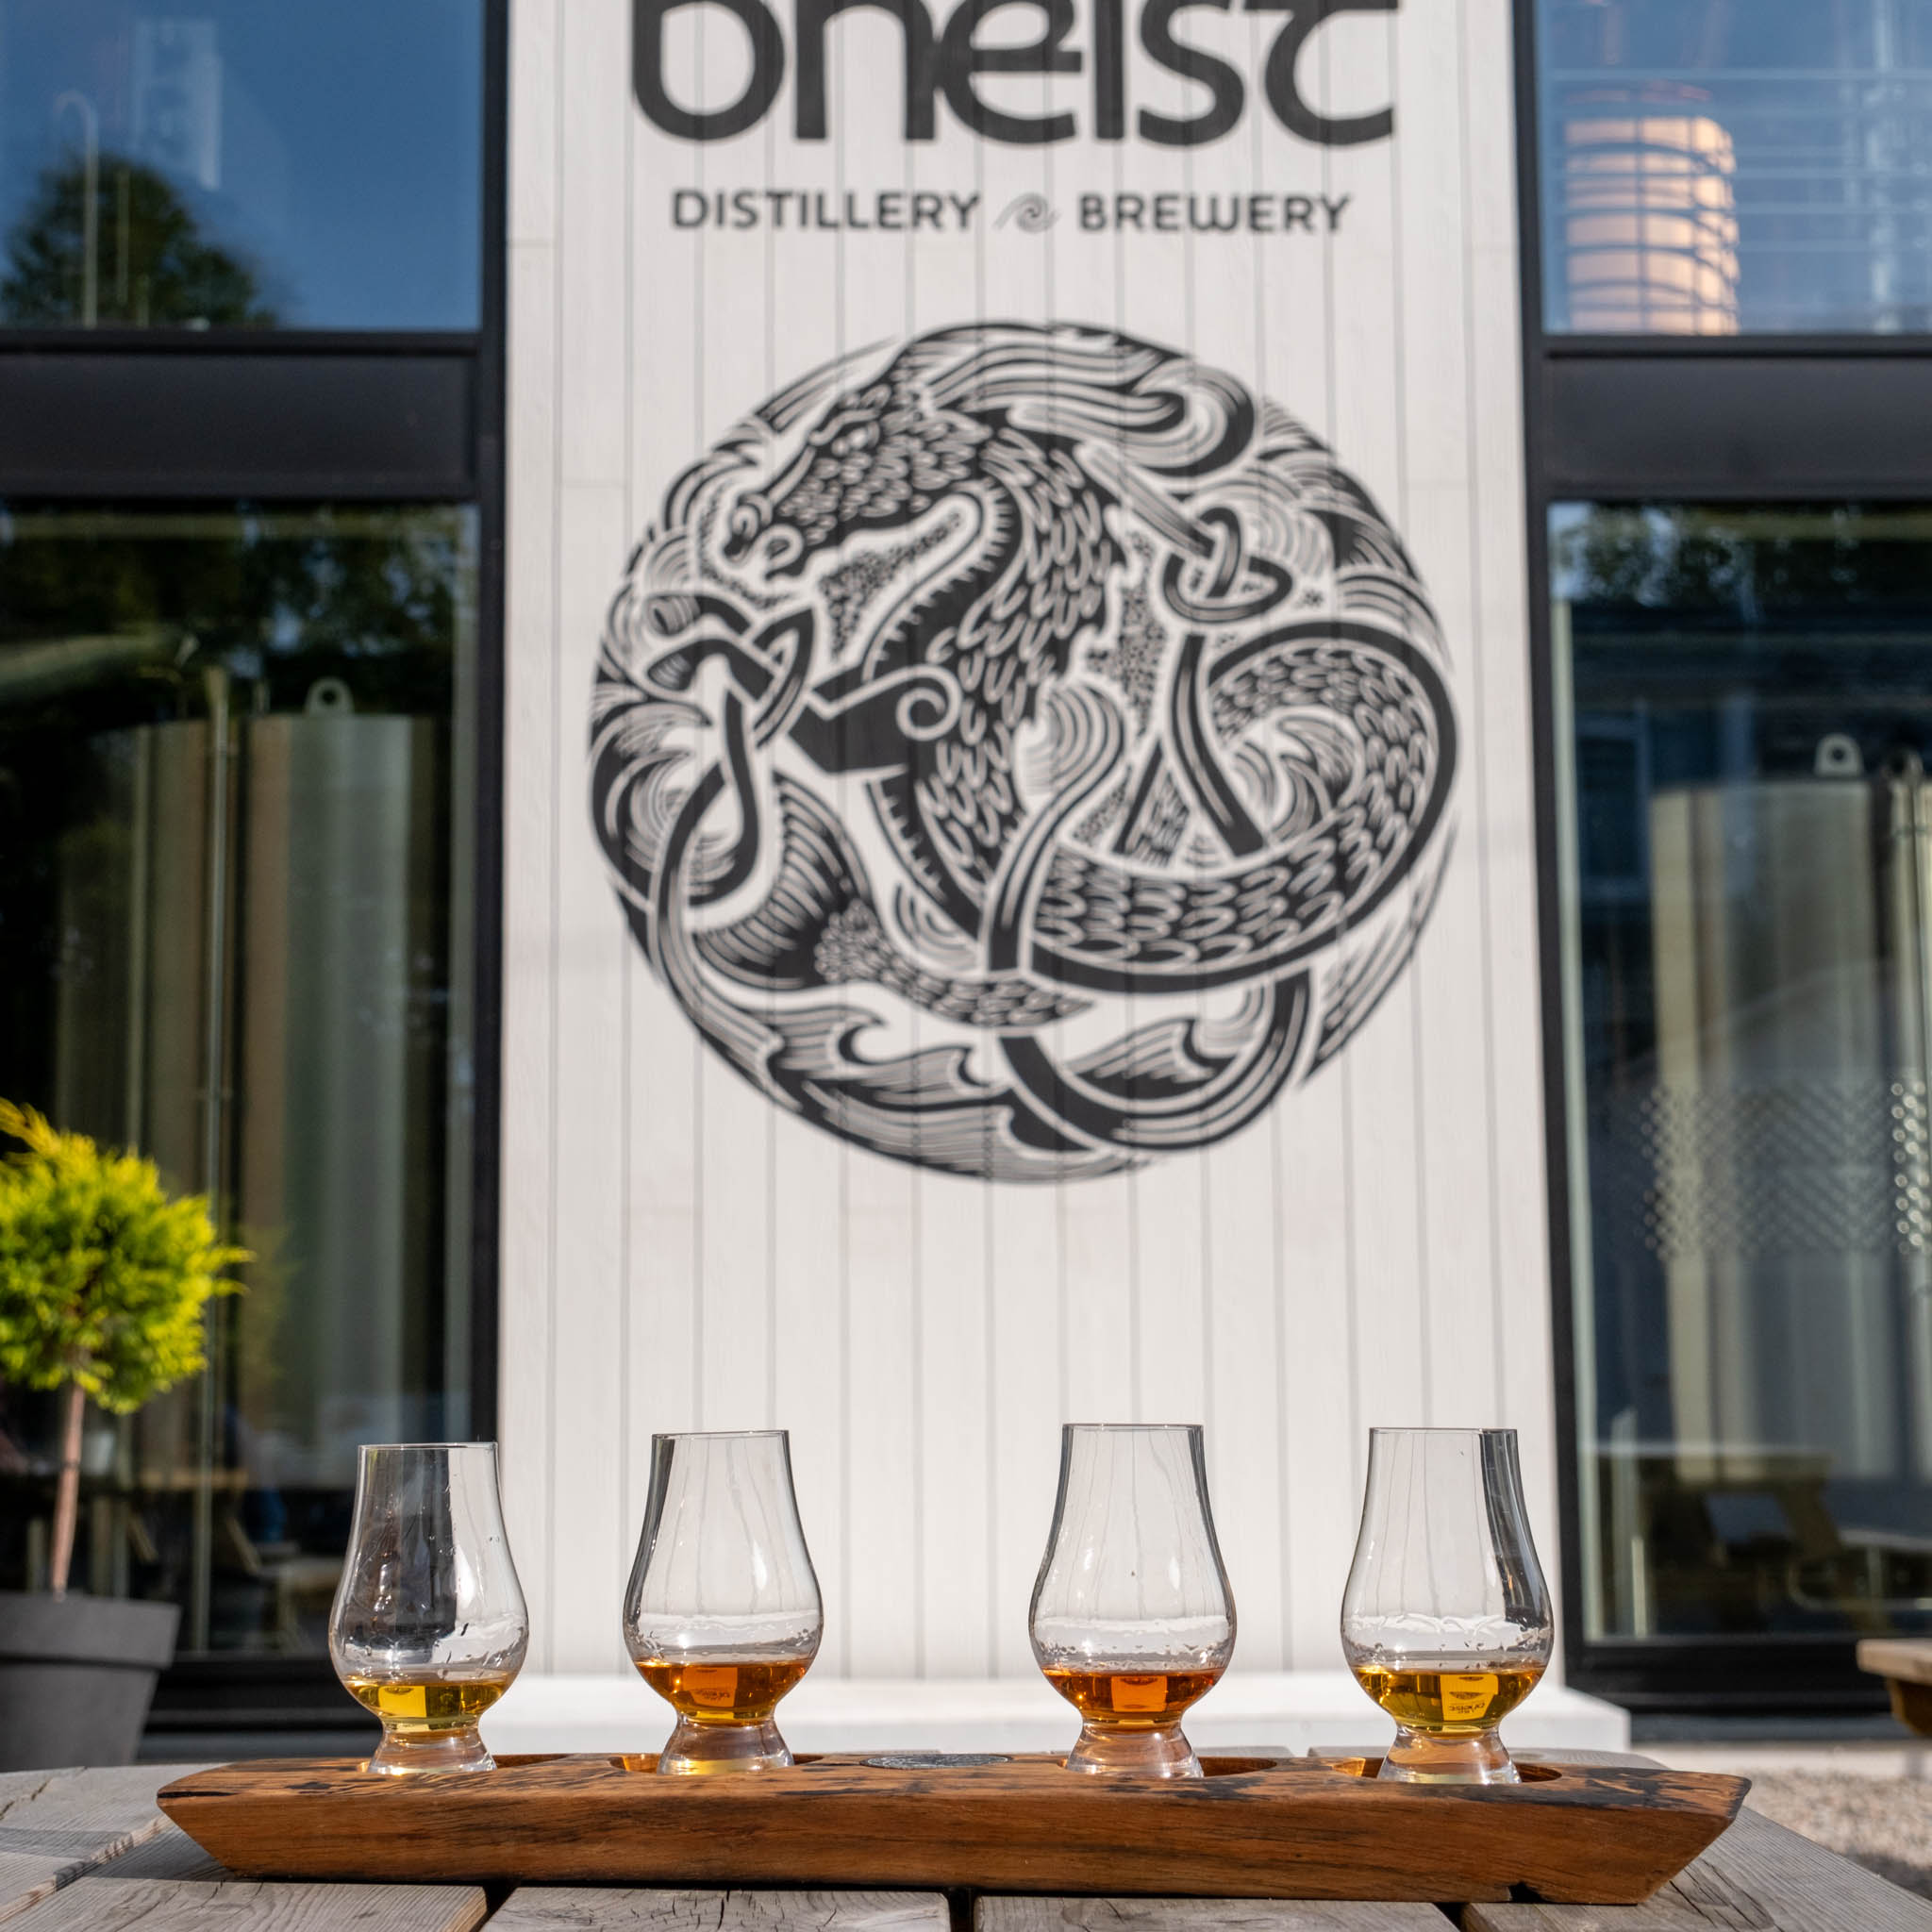 Whisky Tastings at Uile-bheist